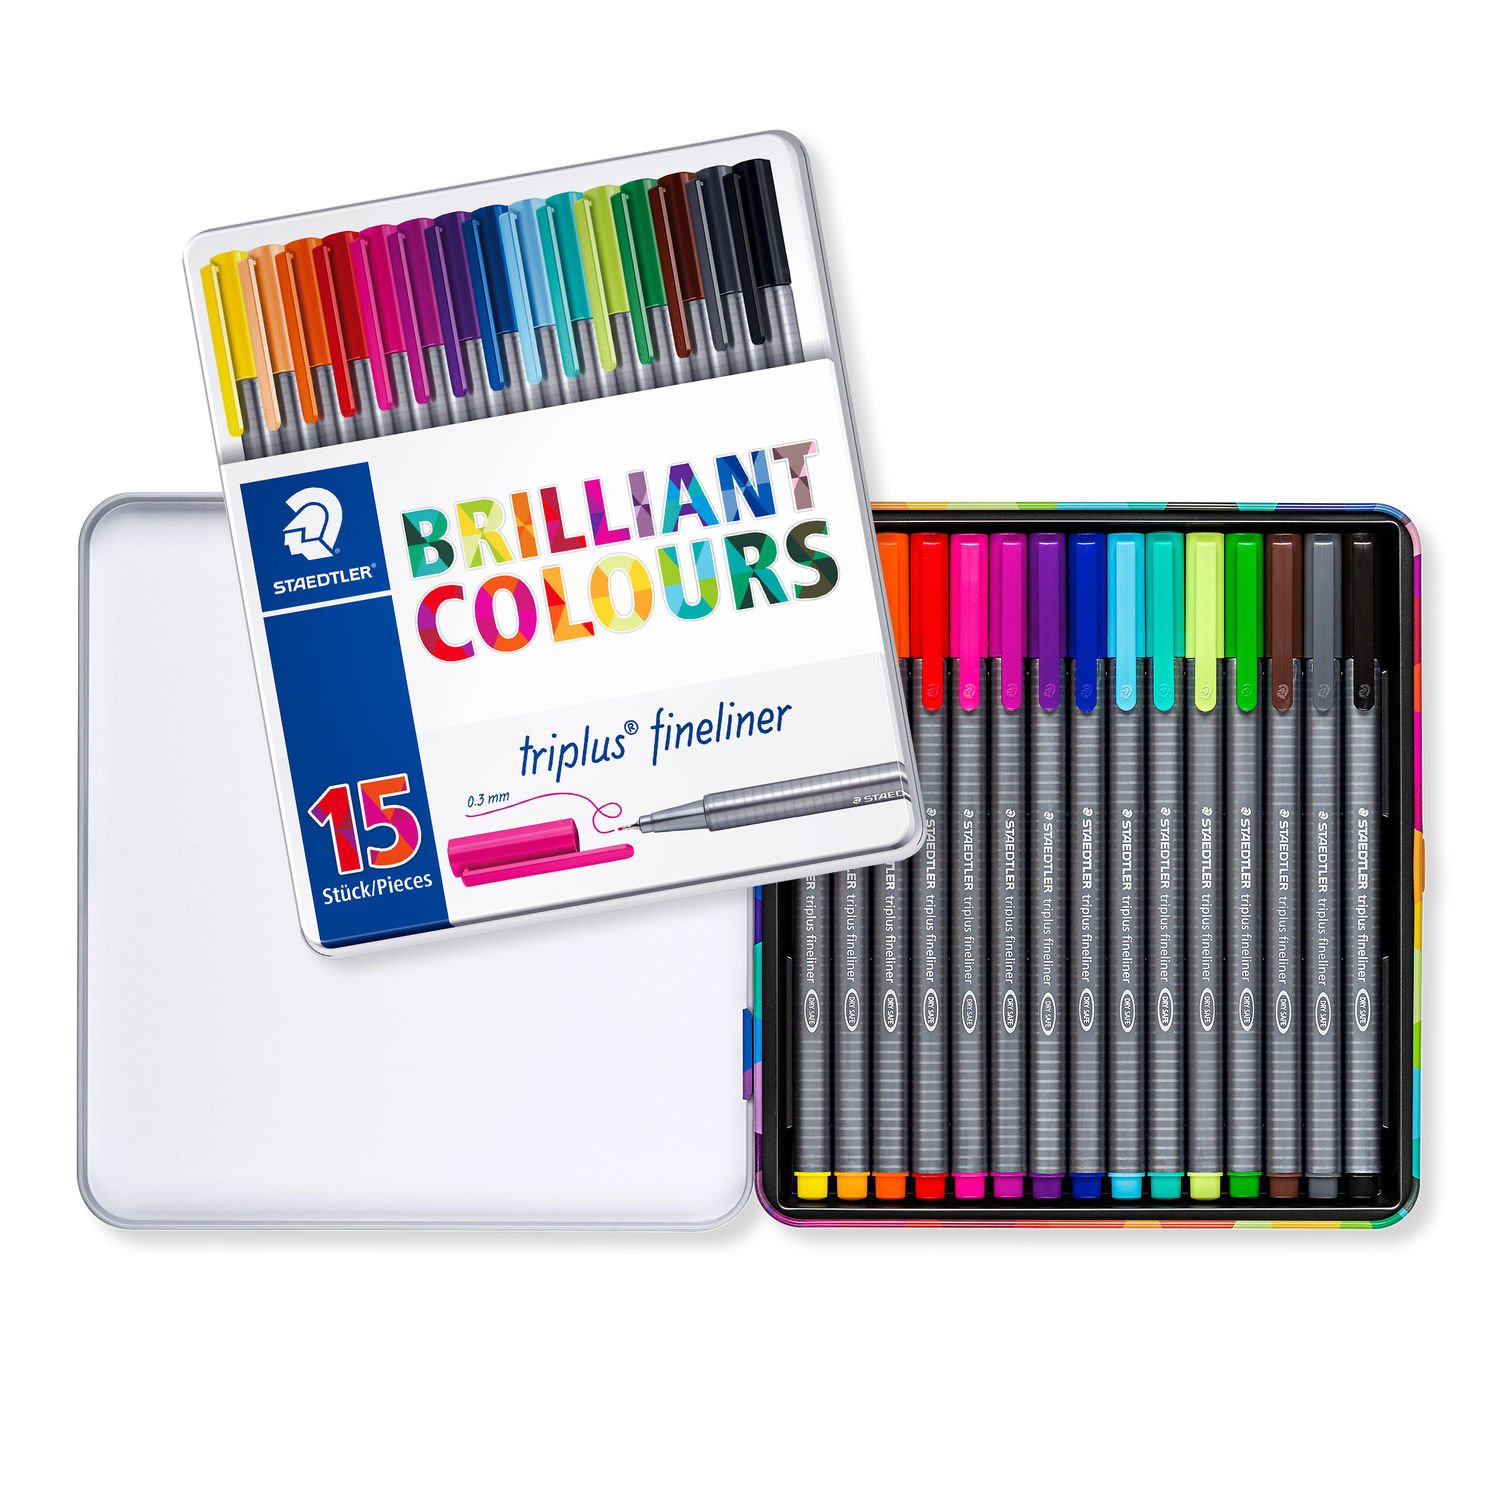 Set 15 fineliner - Triplus - Brilliant Colours | Staedtler image4